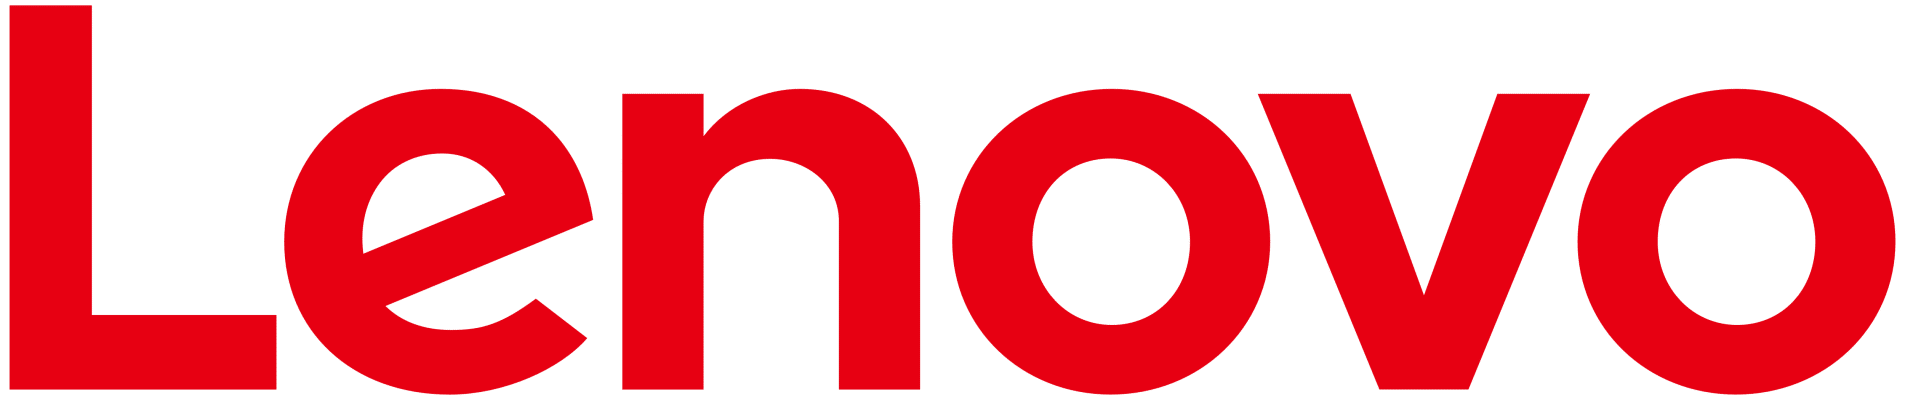 Lenovo logo red letters